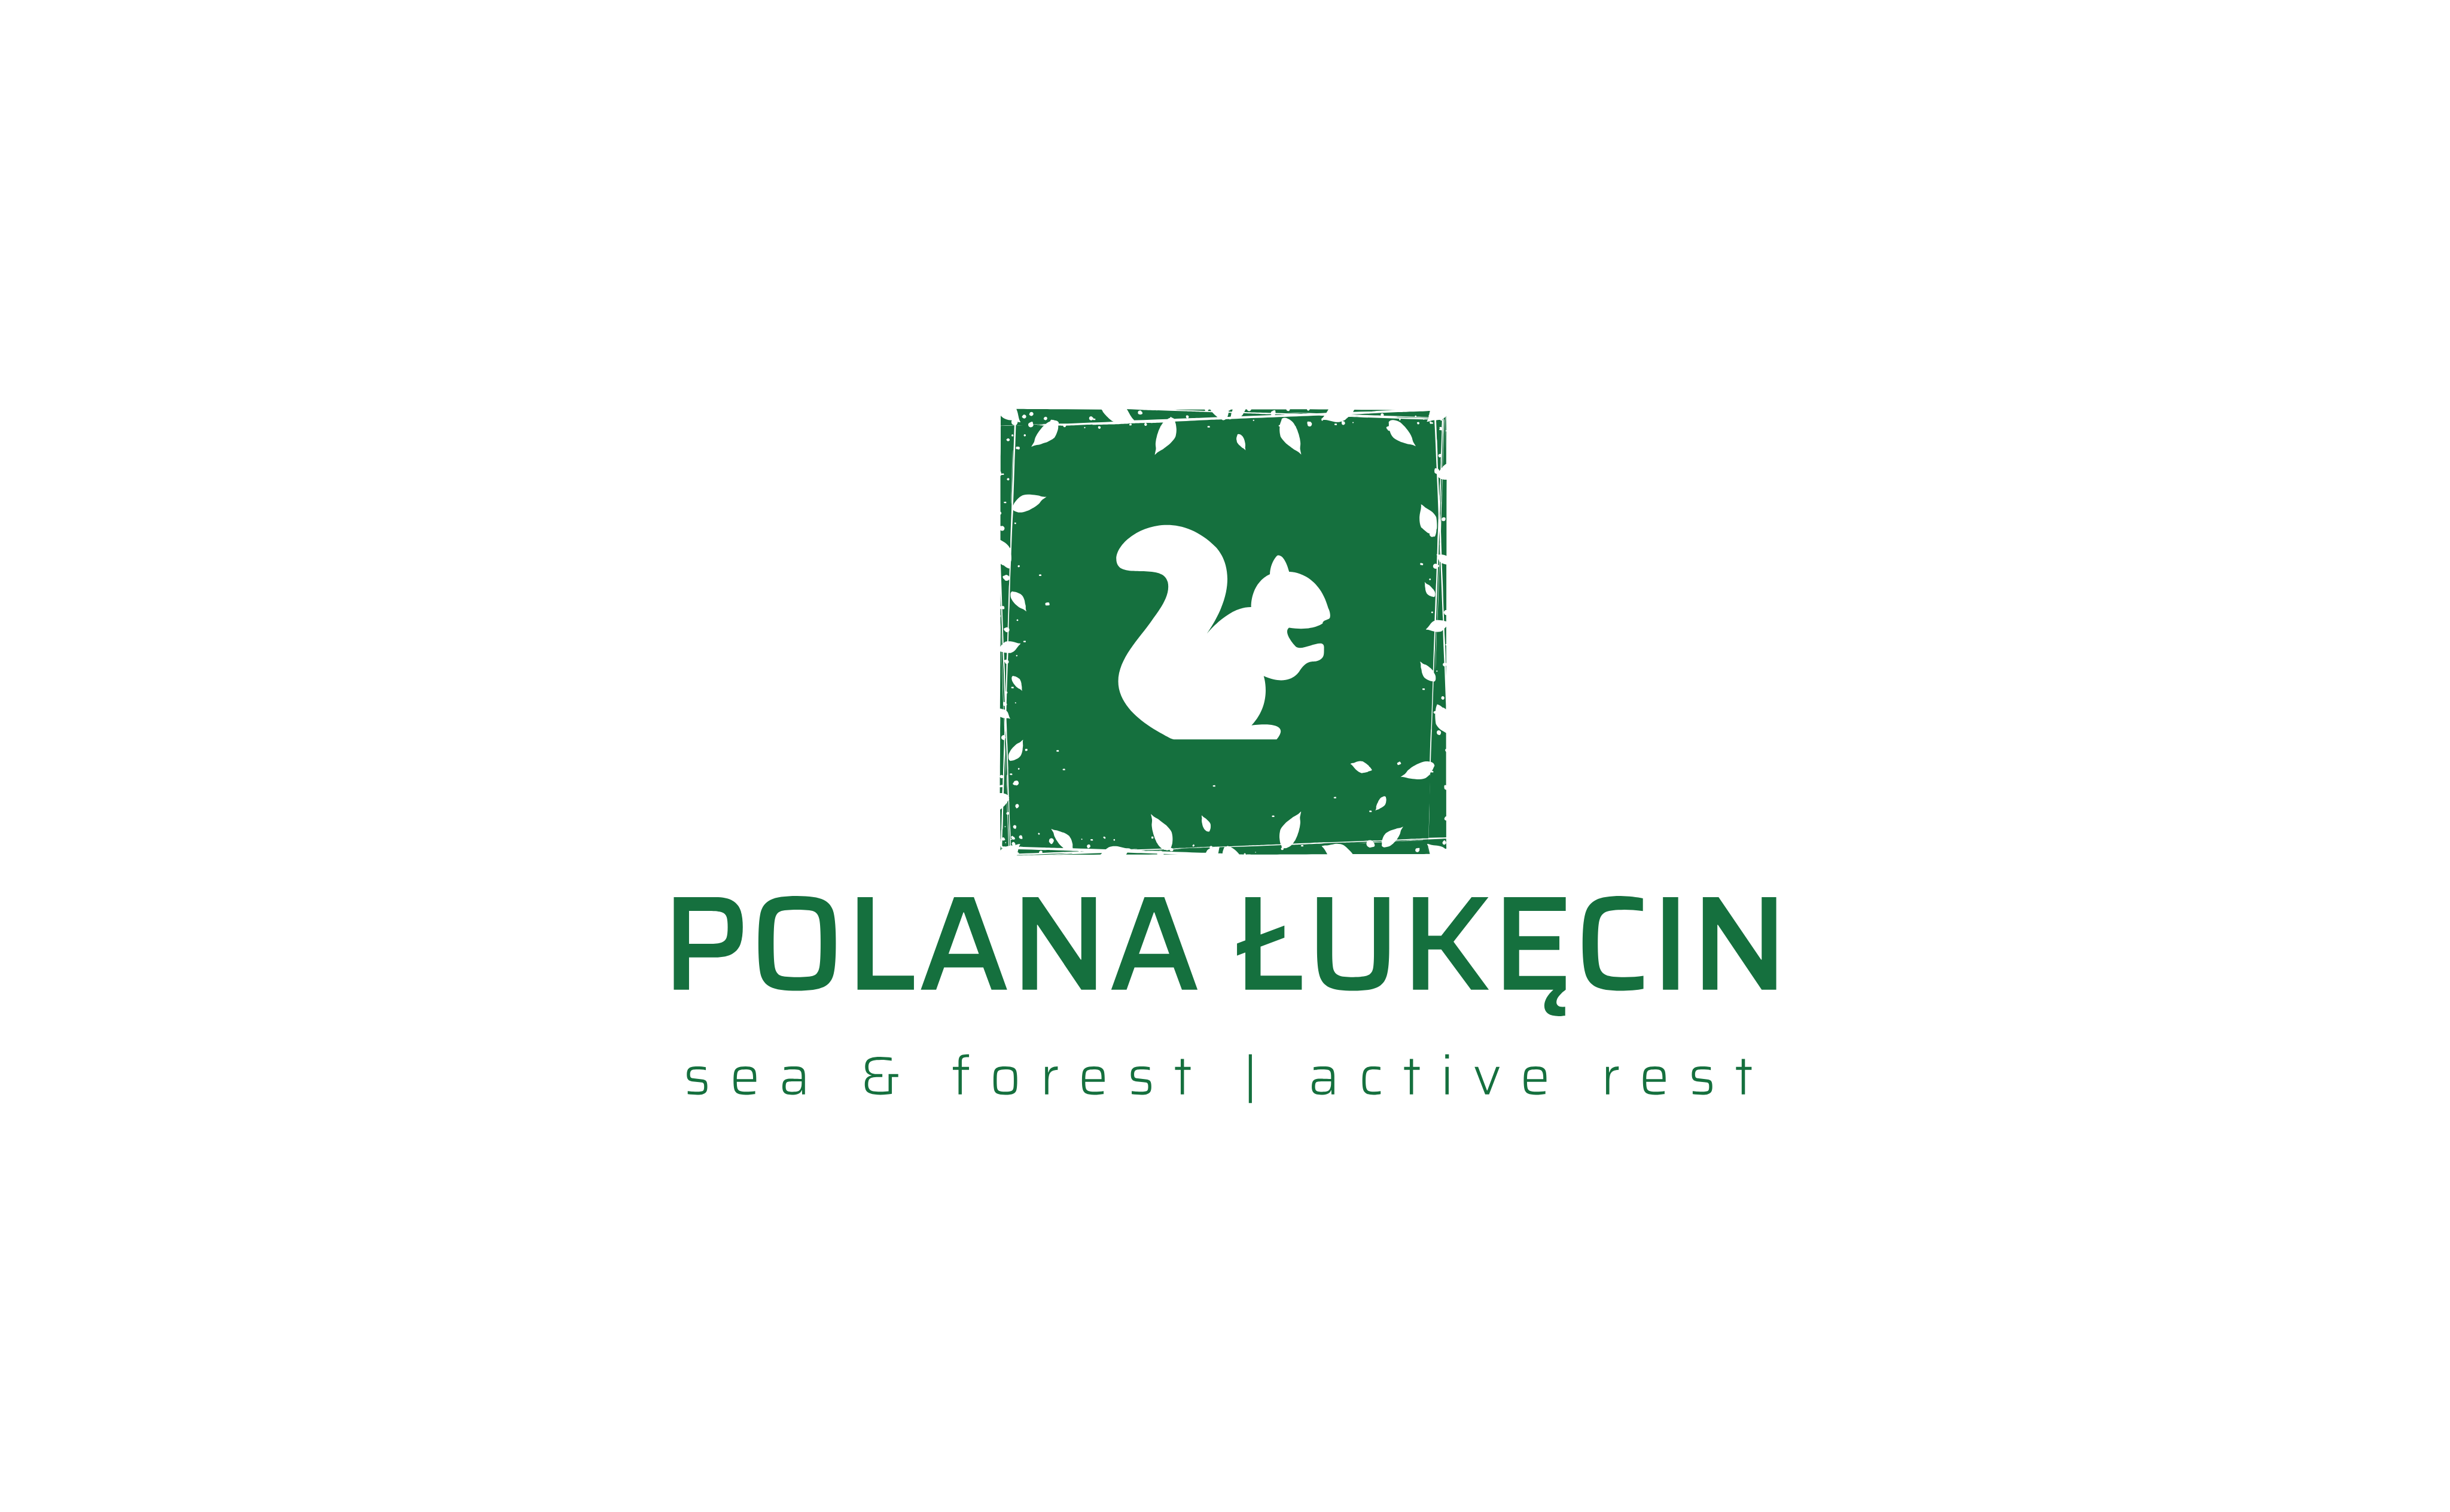 Company logo Polana 